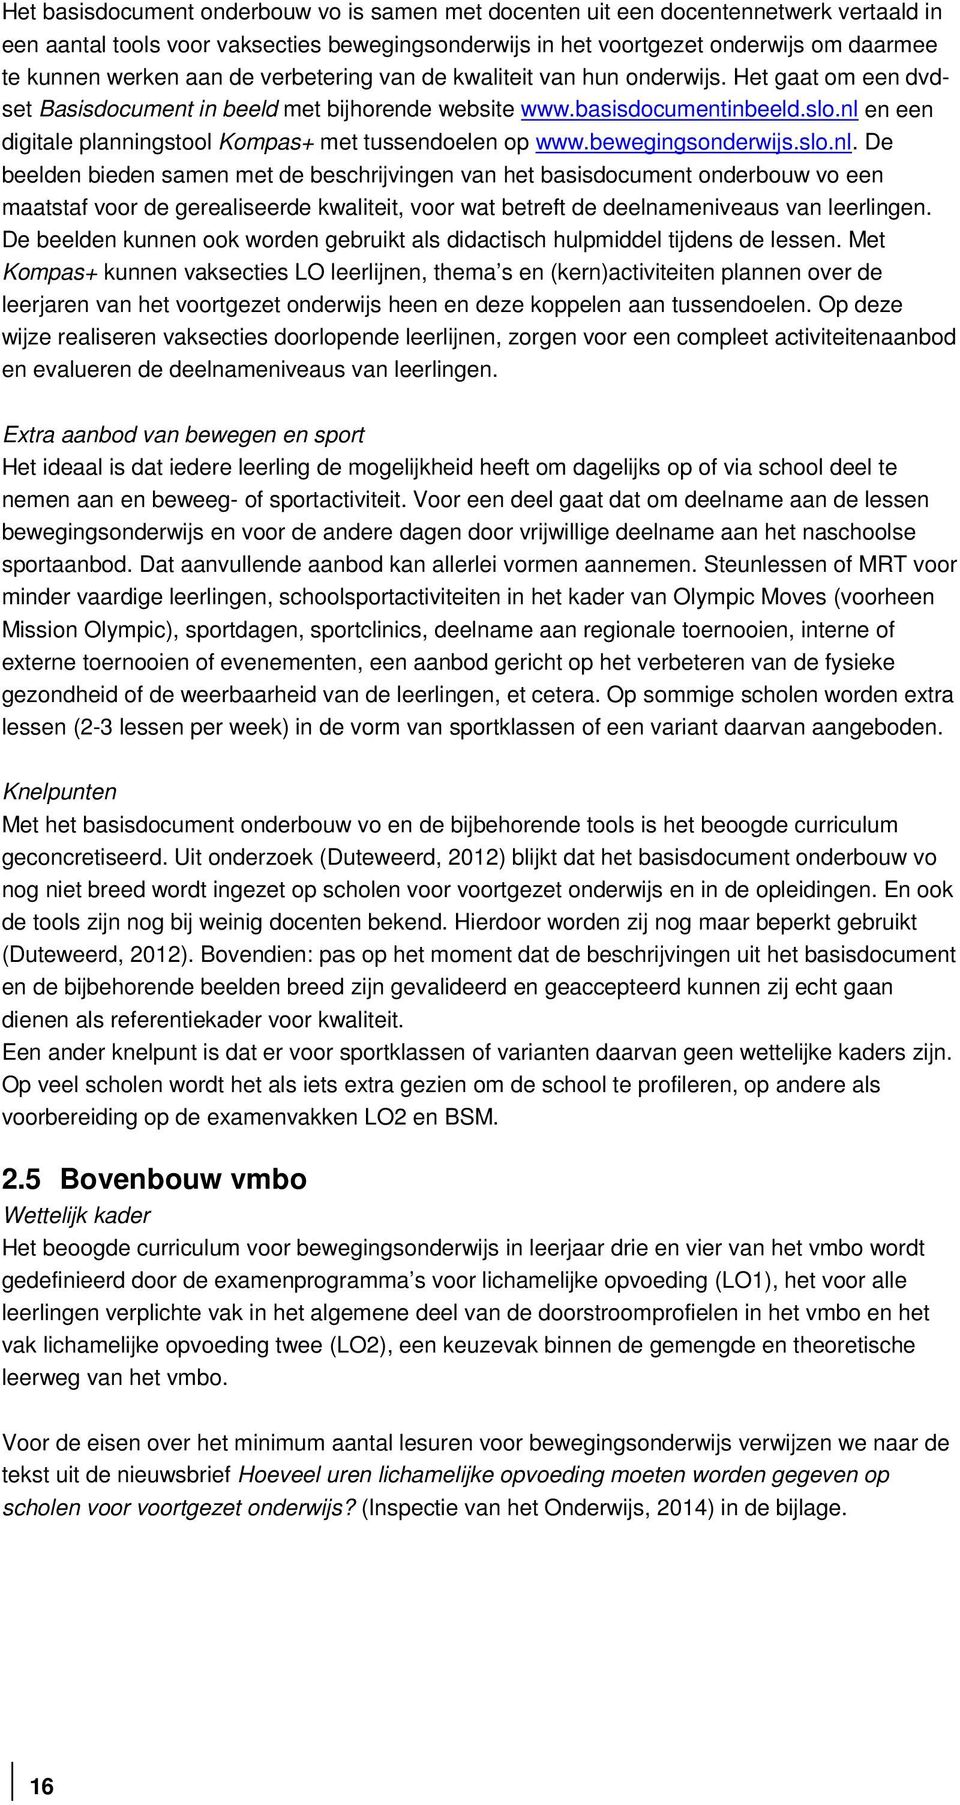 nl en een digitale planningstool Kompas+ met tussendoelen op www.bewegingsonderwijs.slo.nl. De beelden bieden samen met de beschrijvingen van het basisdocument onderbouw vo een maatstaf voor de gerealiseerde kwaliteit, voor wat betreft de deelnameniveaus van leerlingen.